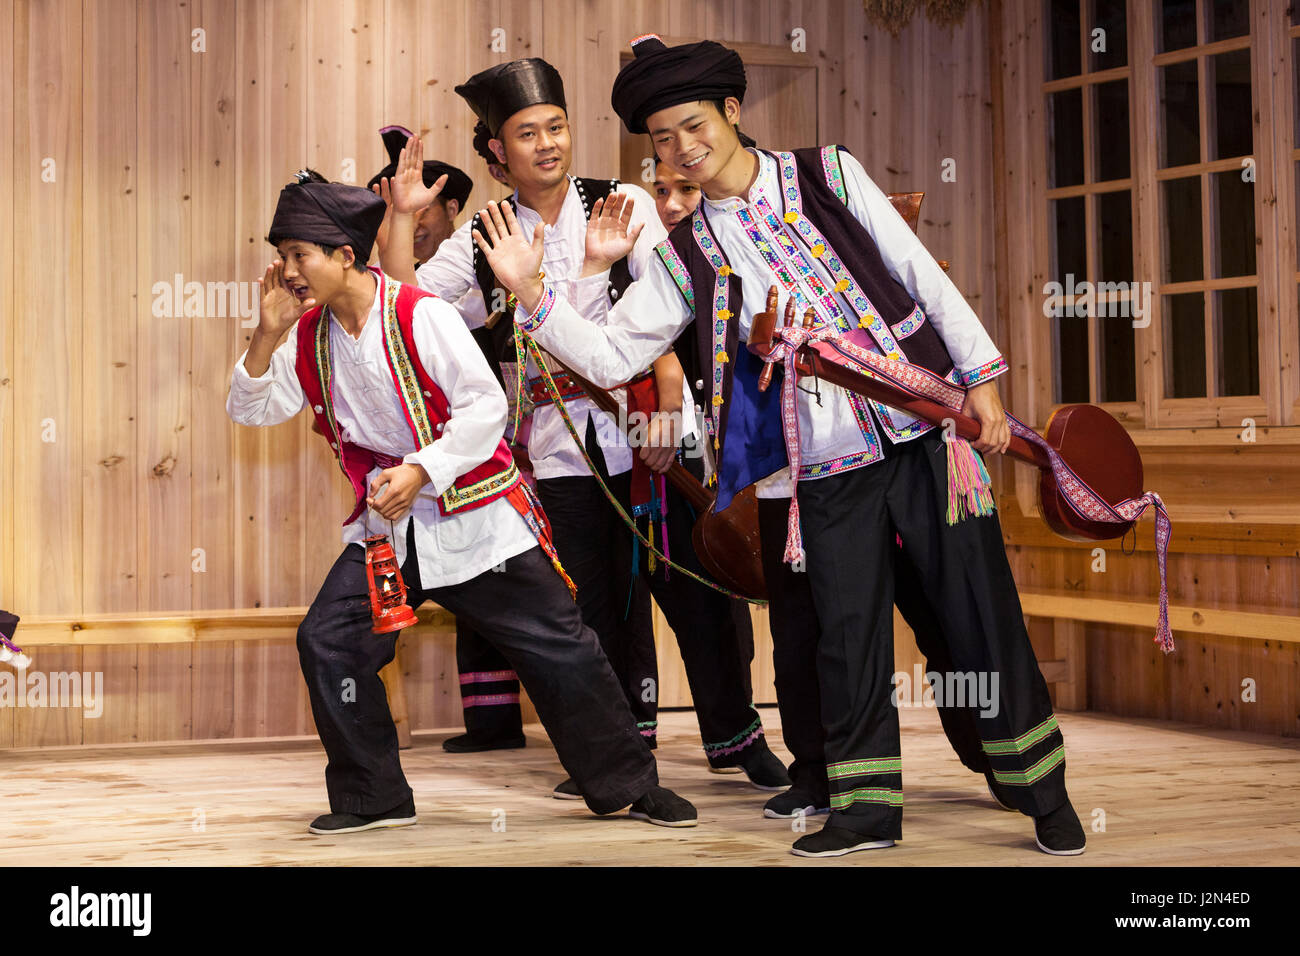 Zhaoxing, Guizhou, China.  Junge Männer handeln eine Geschichte in einer traditionellen musikalischen Darbietung von den Mitgliedern der ethnischen Minderheit Dong. Stockfoto